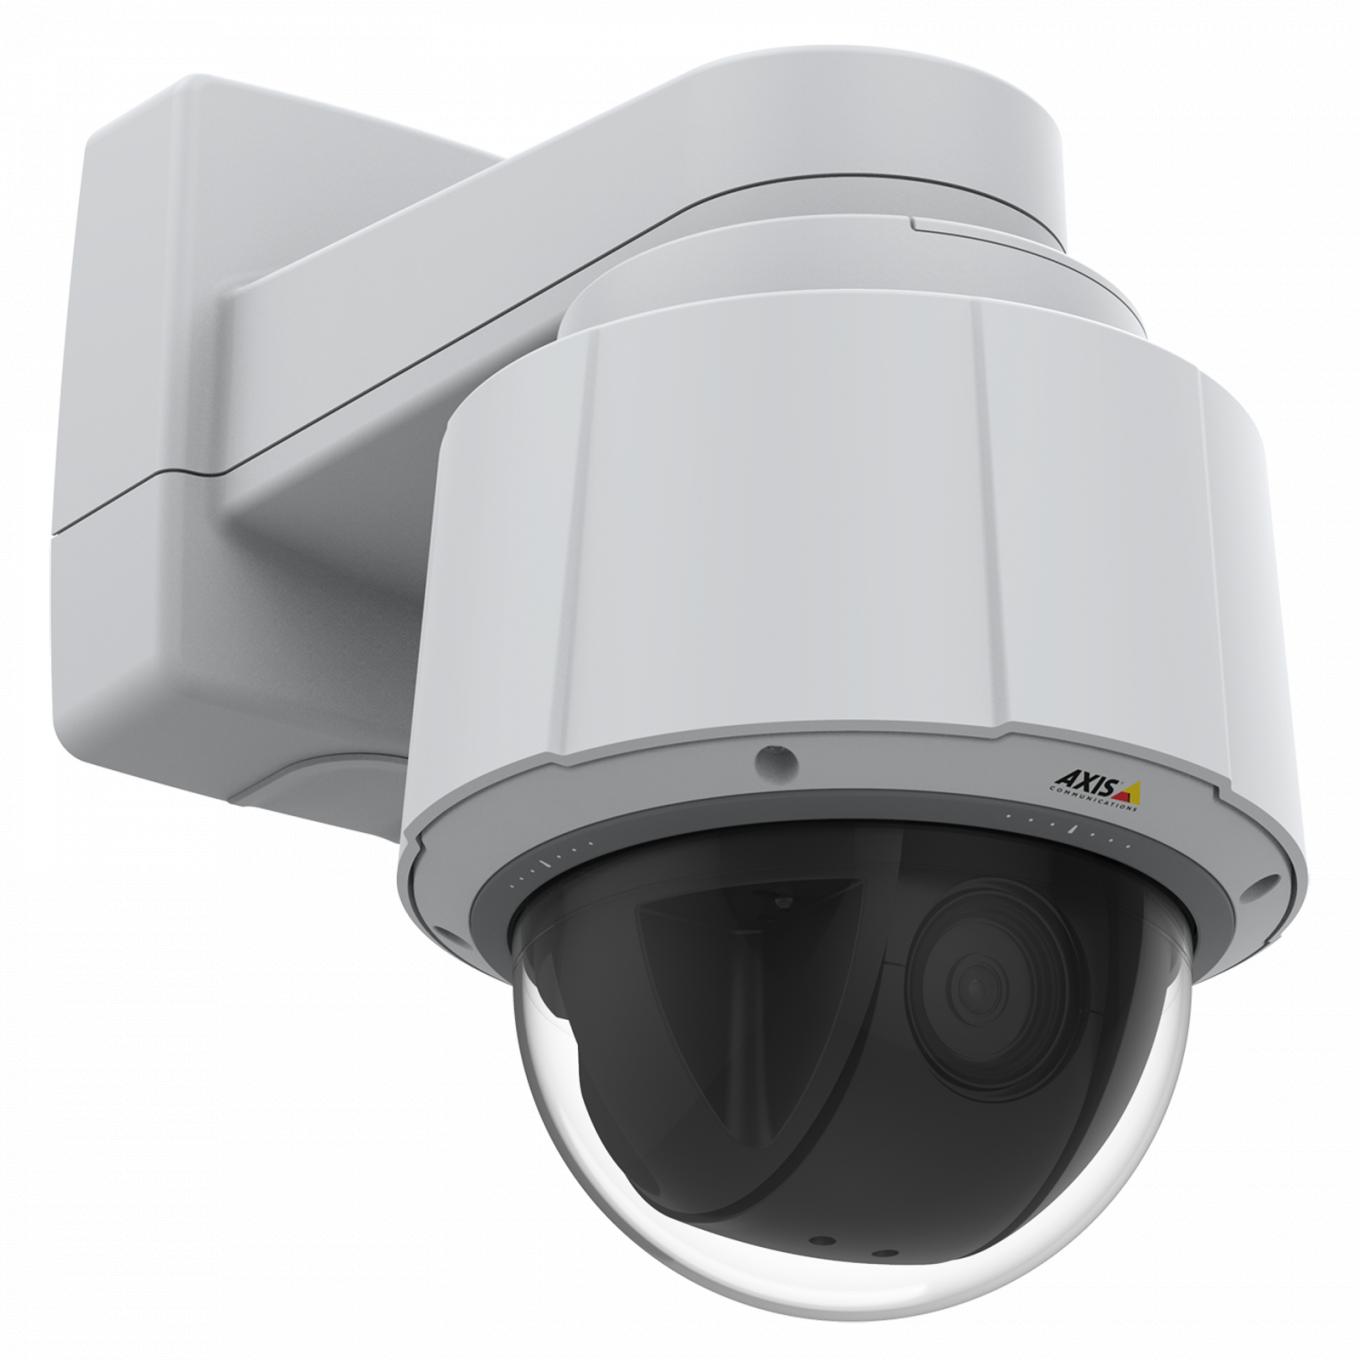 Le modèle Axis IP Camera Q6075 dispose de la fonction PTZ d’intérieur avec HDTV 720p et zoom optique 30x